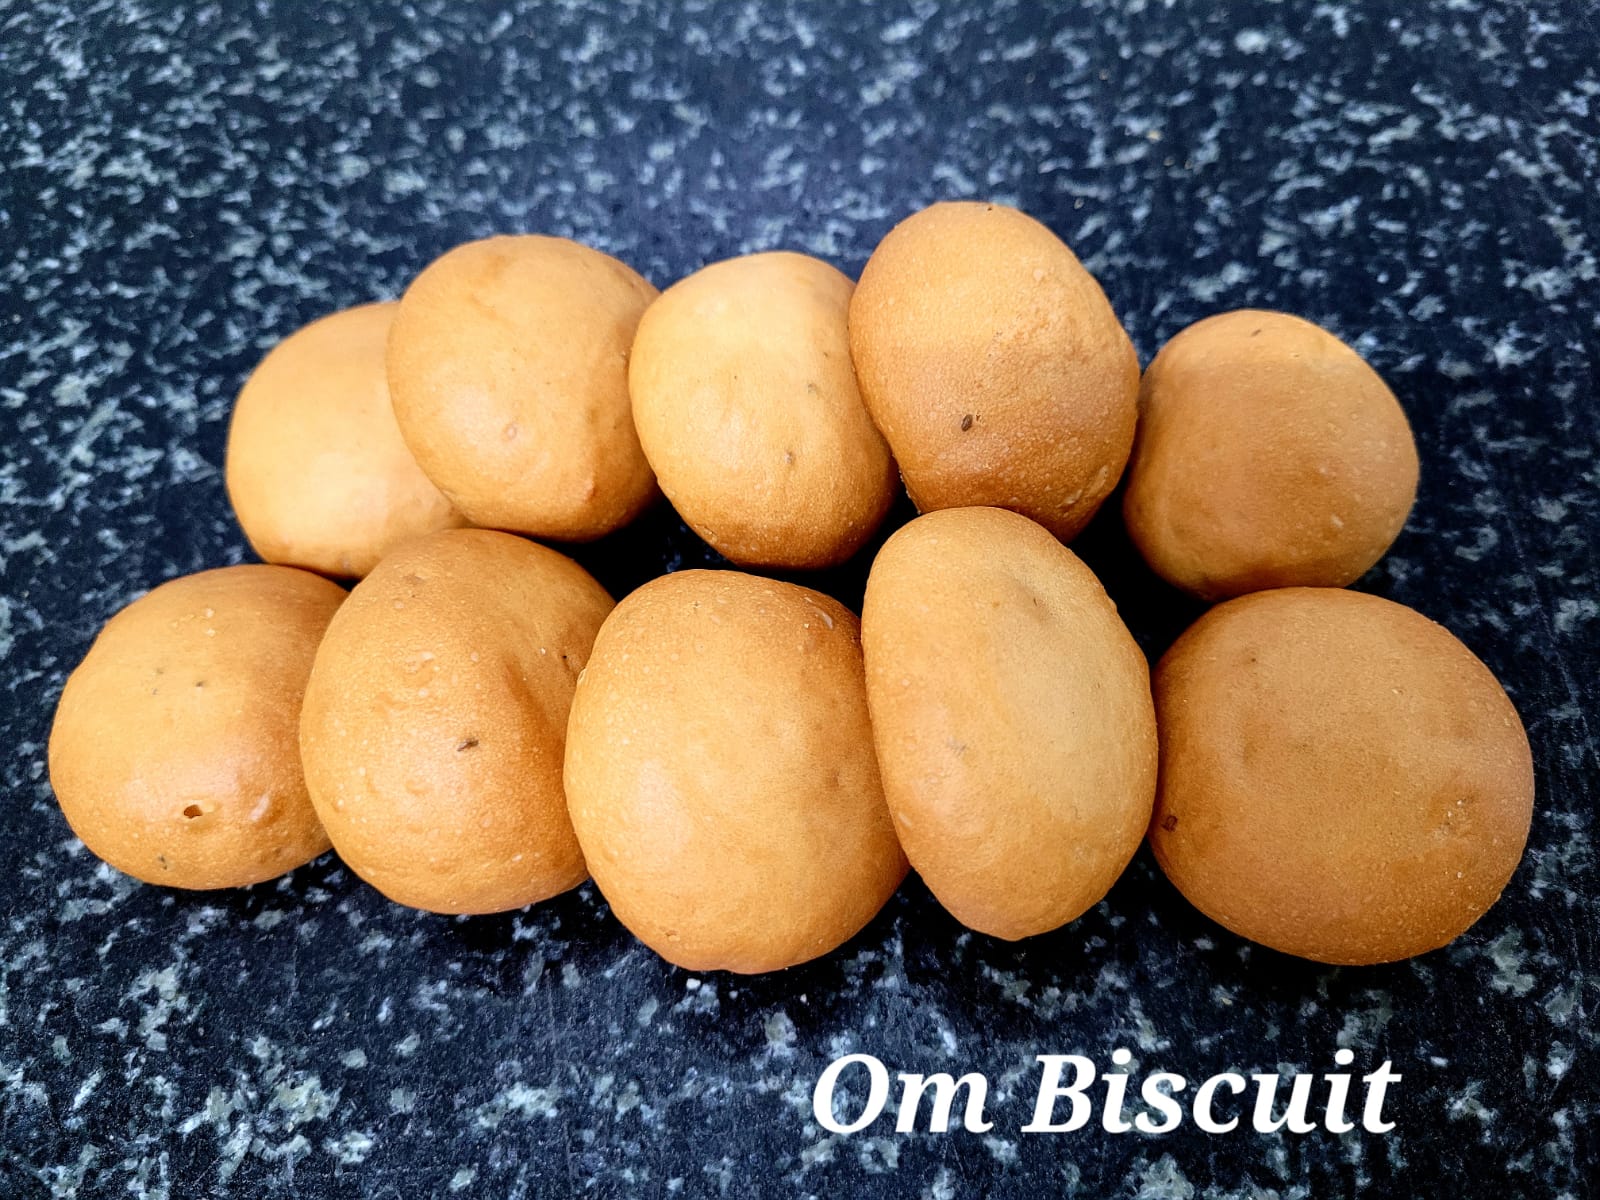 Om biscuits (Round)